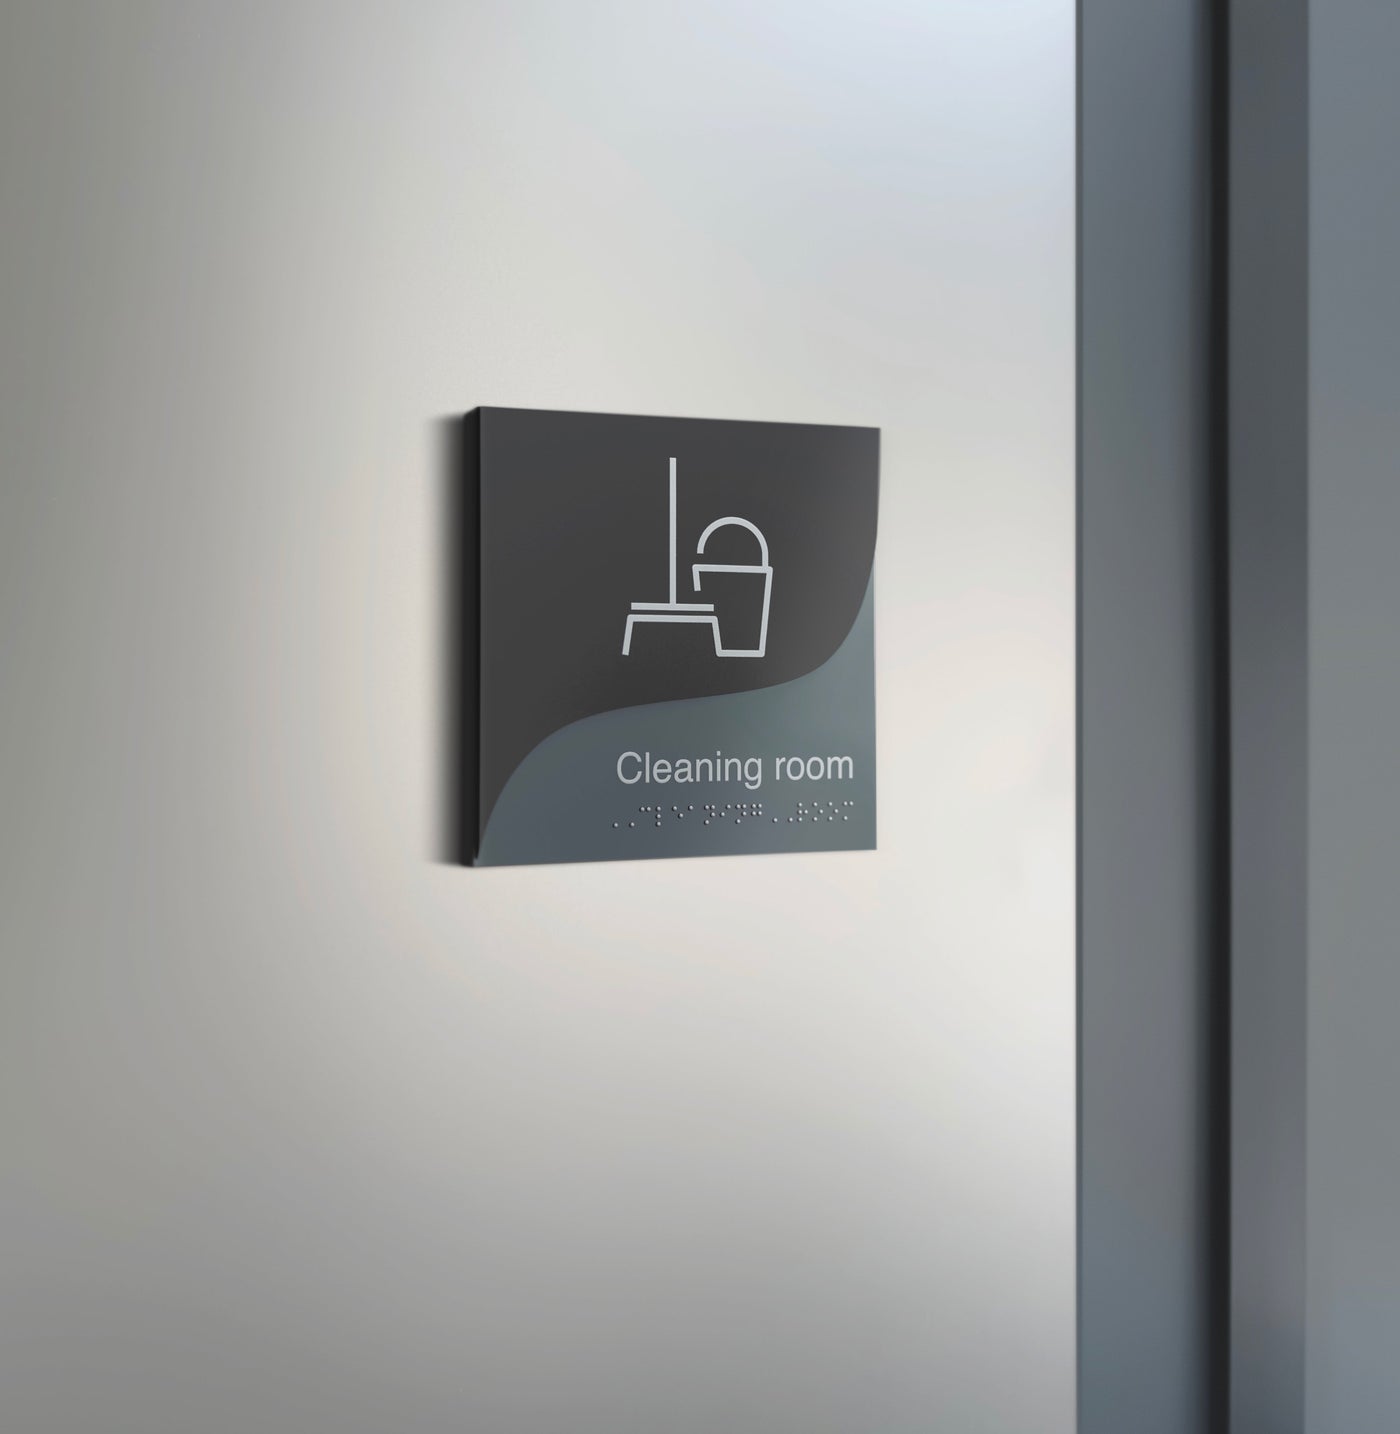 Information Signs - Utility Room Door Sign - Double Acrylic Door Plate "Gray Calm" Design